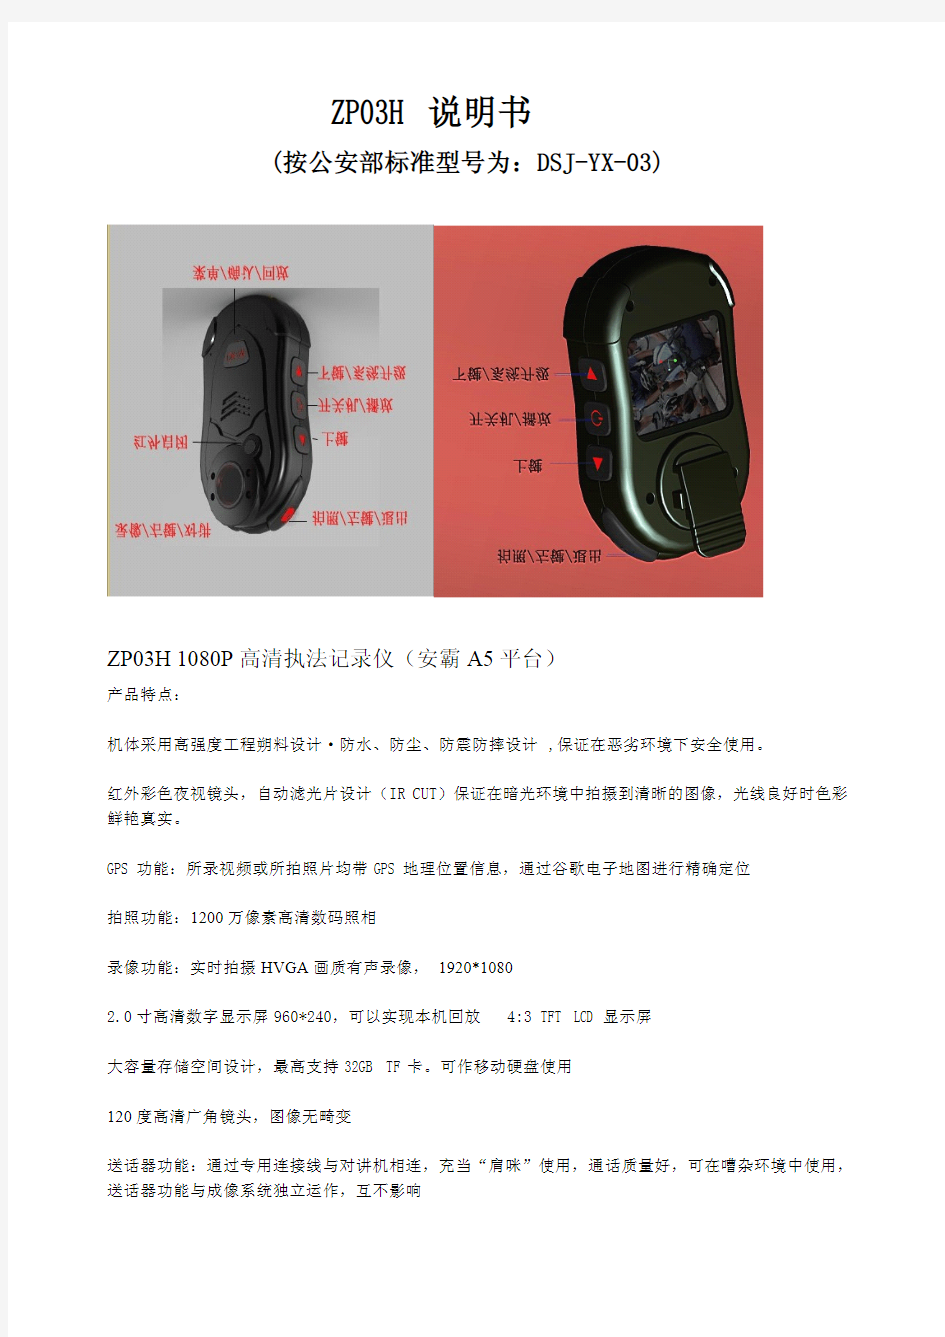 警用执法记录仪 DSJ-YX-03中文说明书